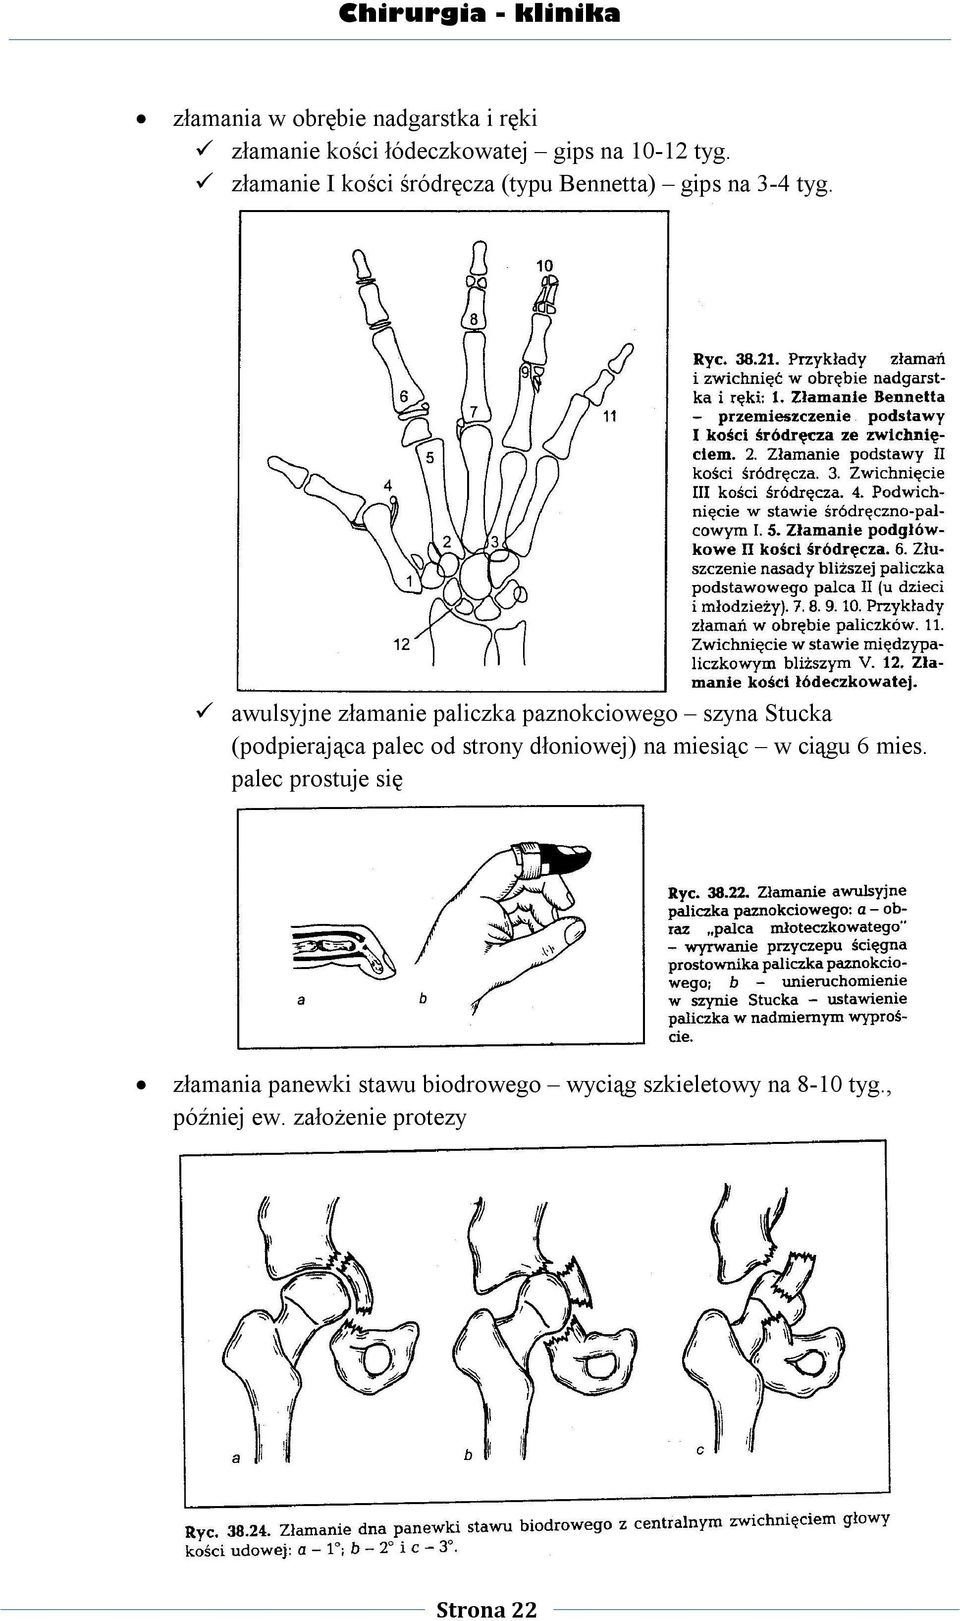 awulsyjne złamanie paliczka paznokciowego szyna Stucka (podpierająca palec od strony dłoniowej) na